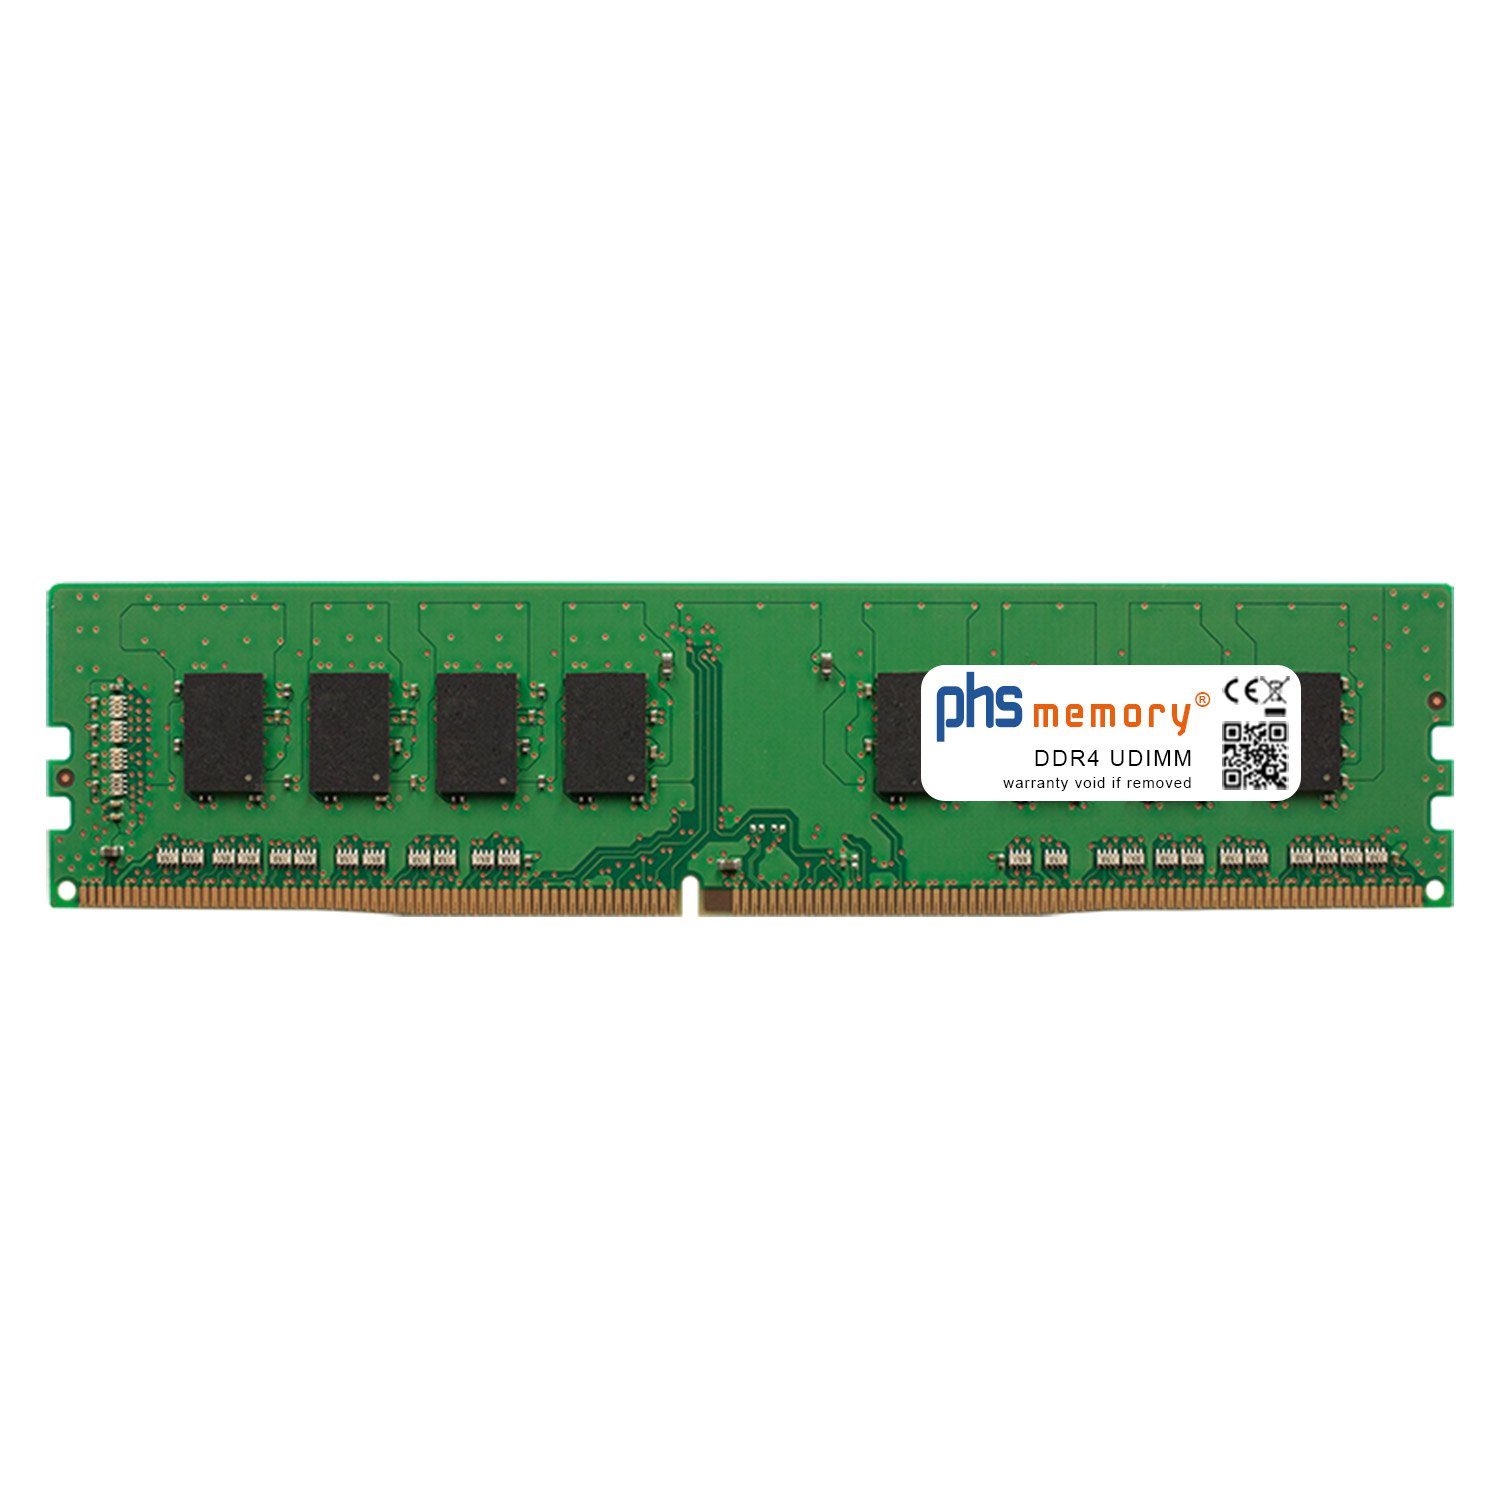 PHS-memory RAM für Captiva Advanced Gaming R68-761 Arbeitsspeicher